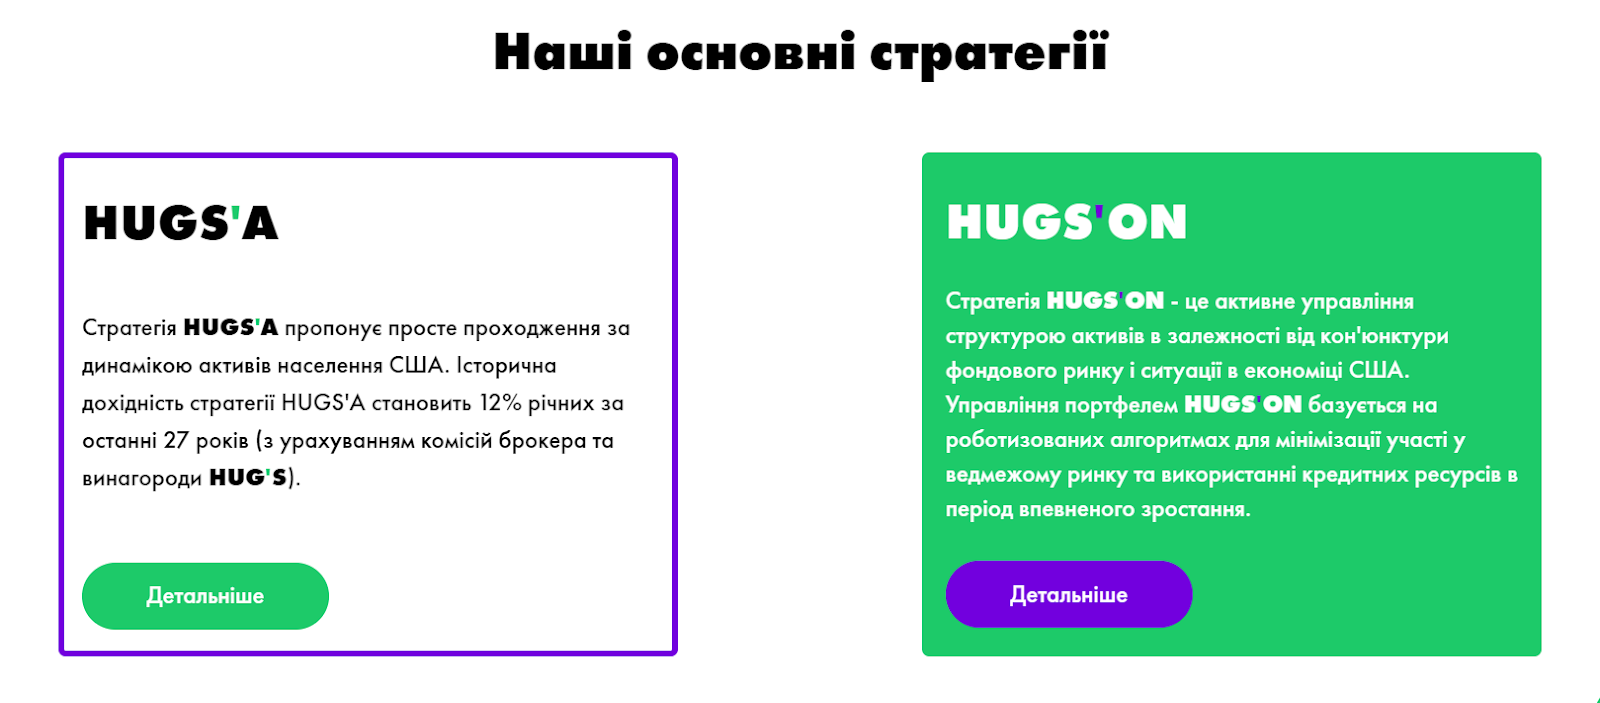 Обзор украинской платформы Hug’s, отзывы о ней